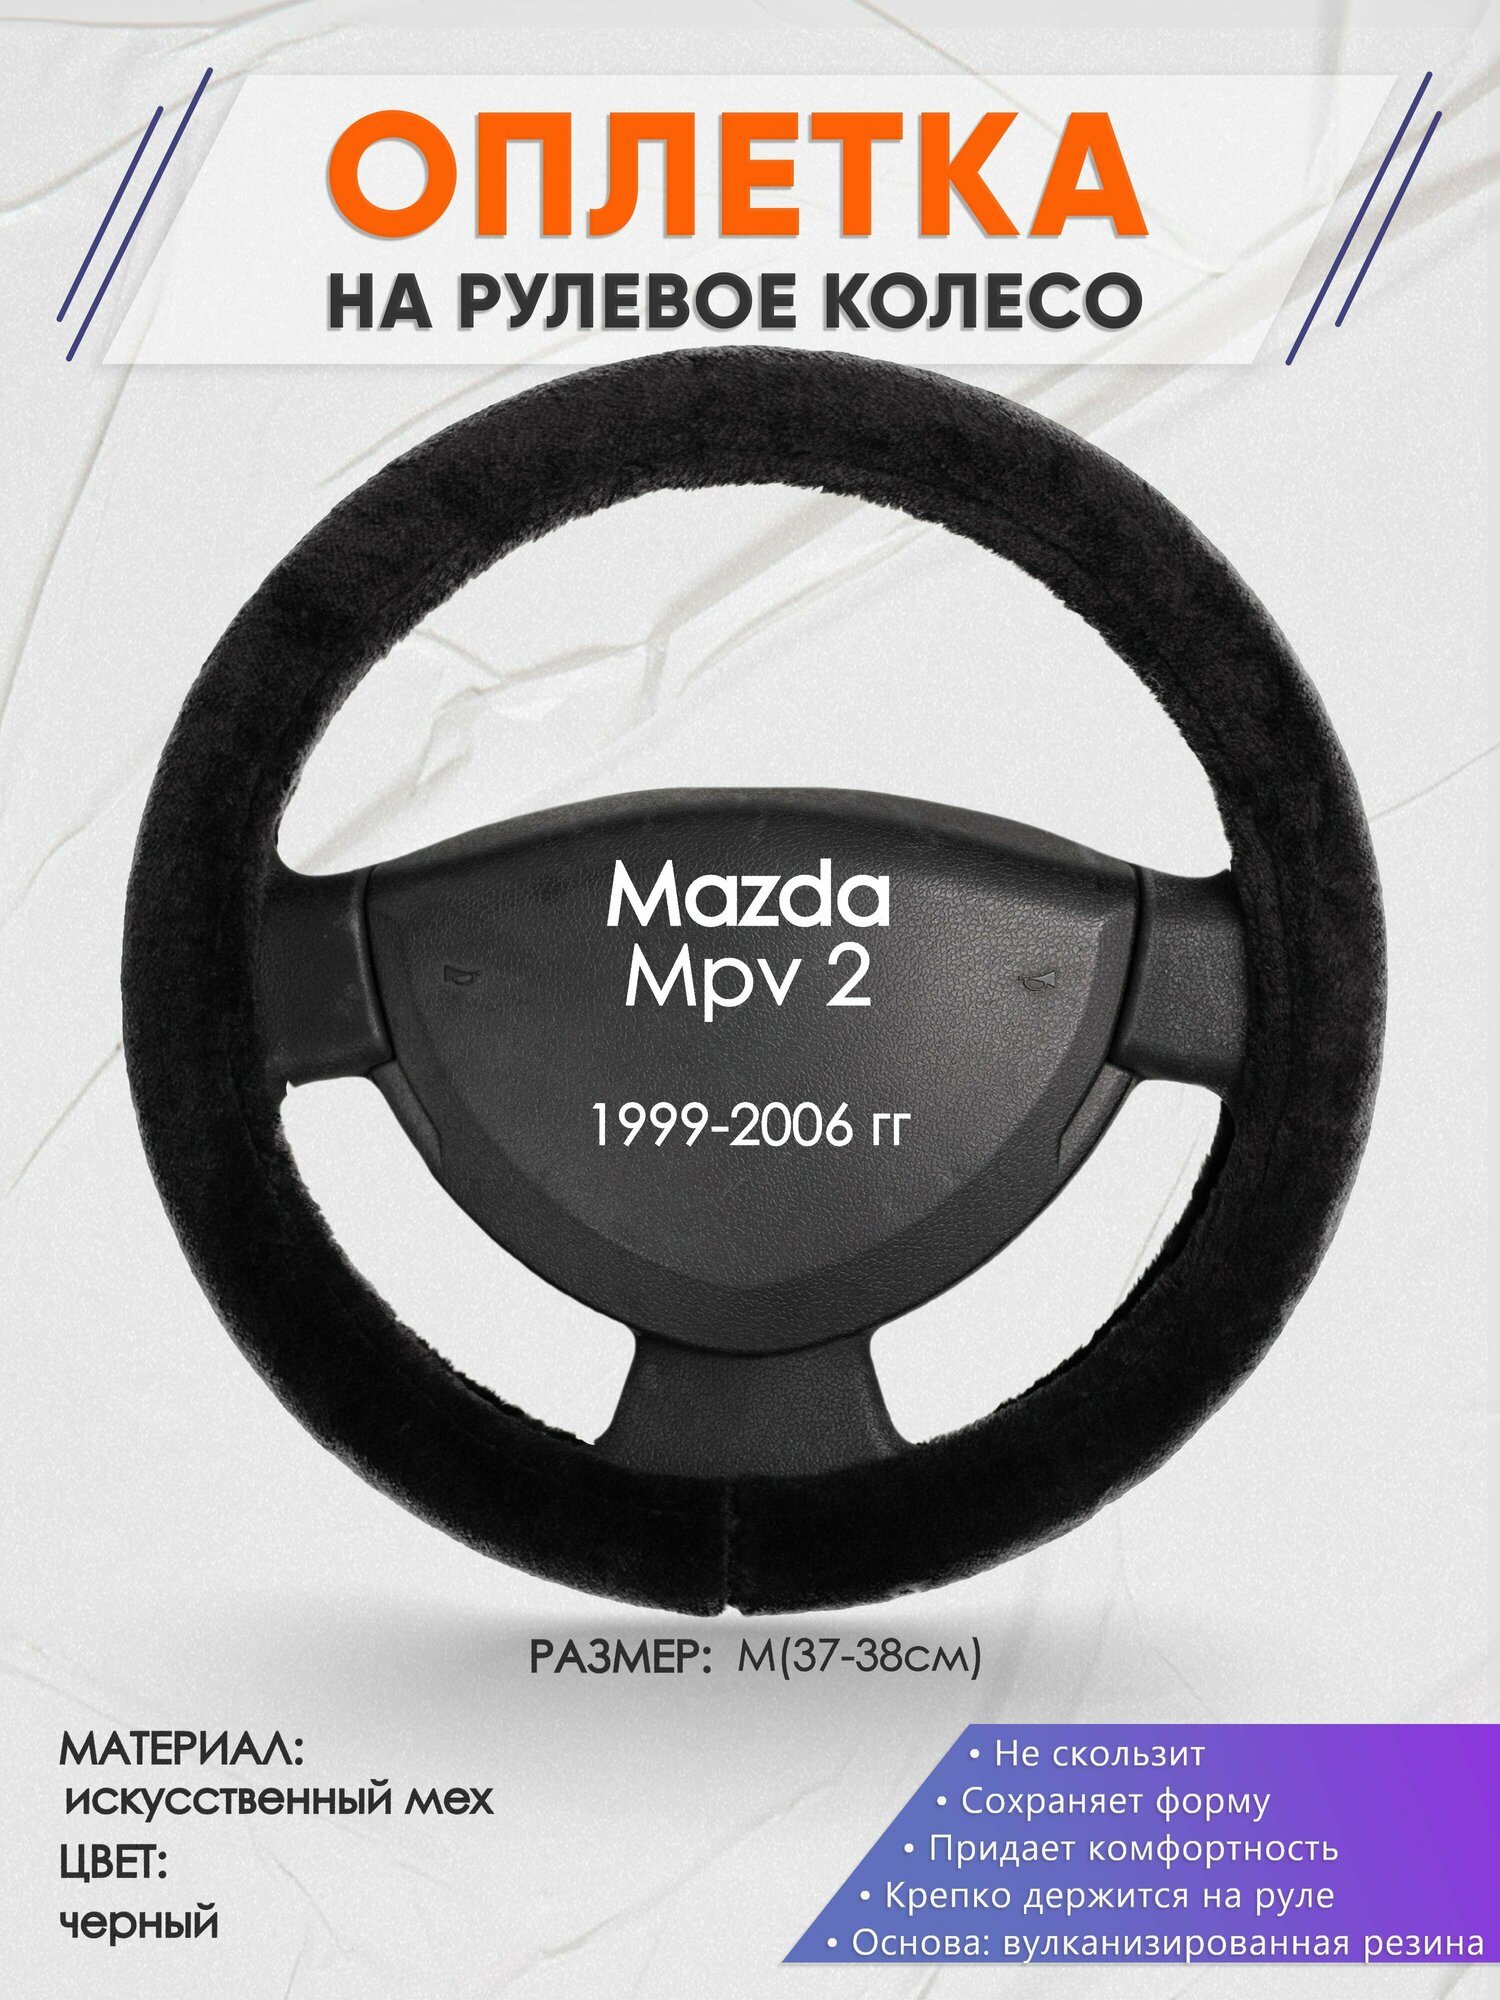 Оплетка на руль для Mazda Mpv 2(Мазда мпв 2) 1999-2006, M(37-38см), Искусственный мех 45